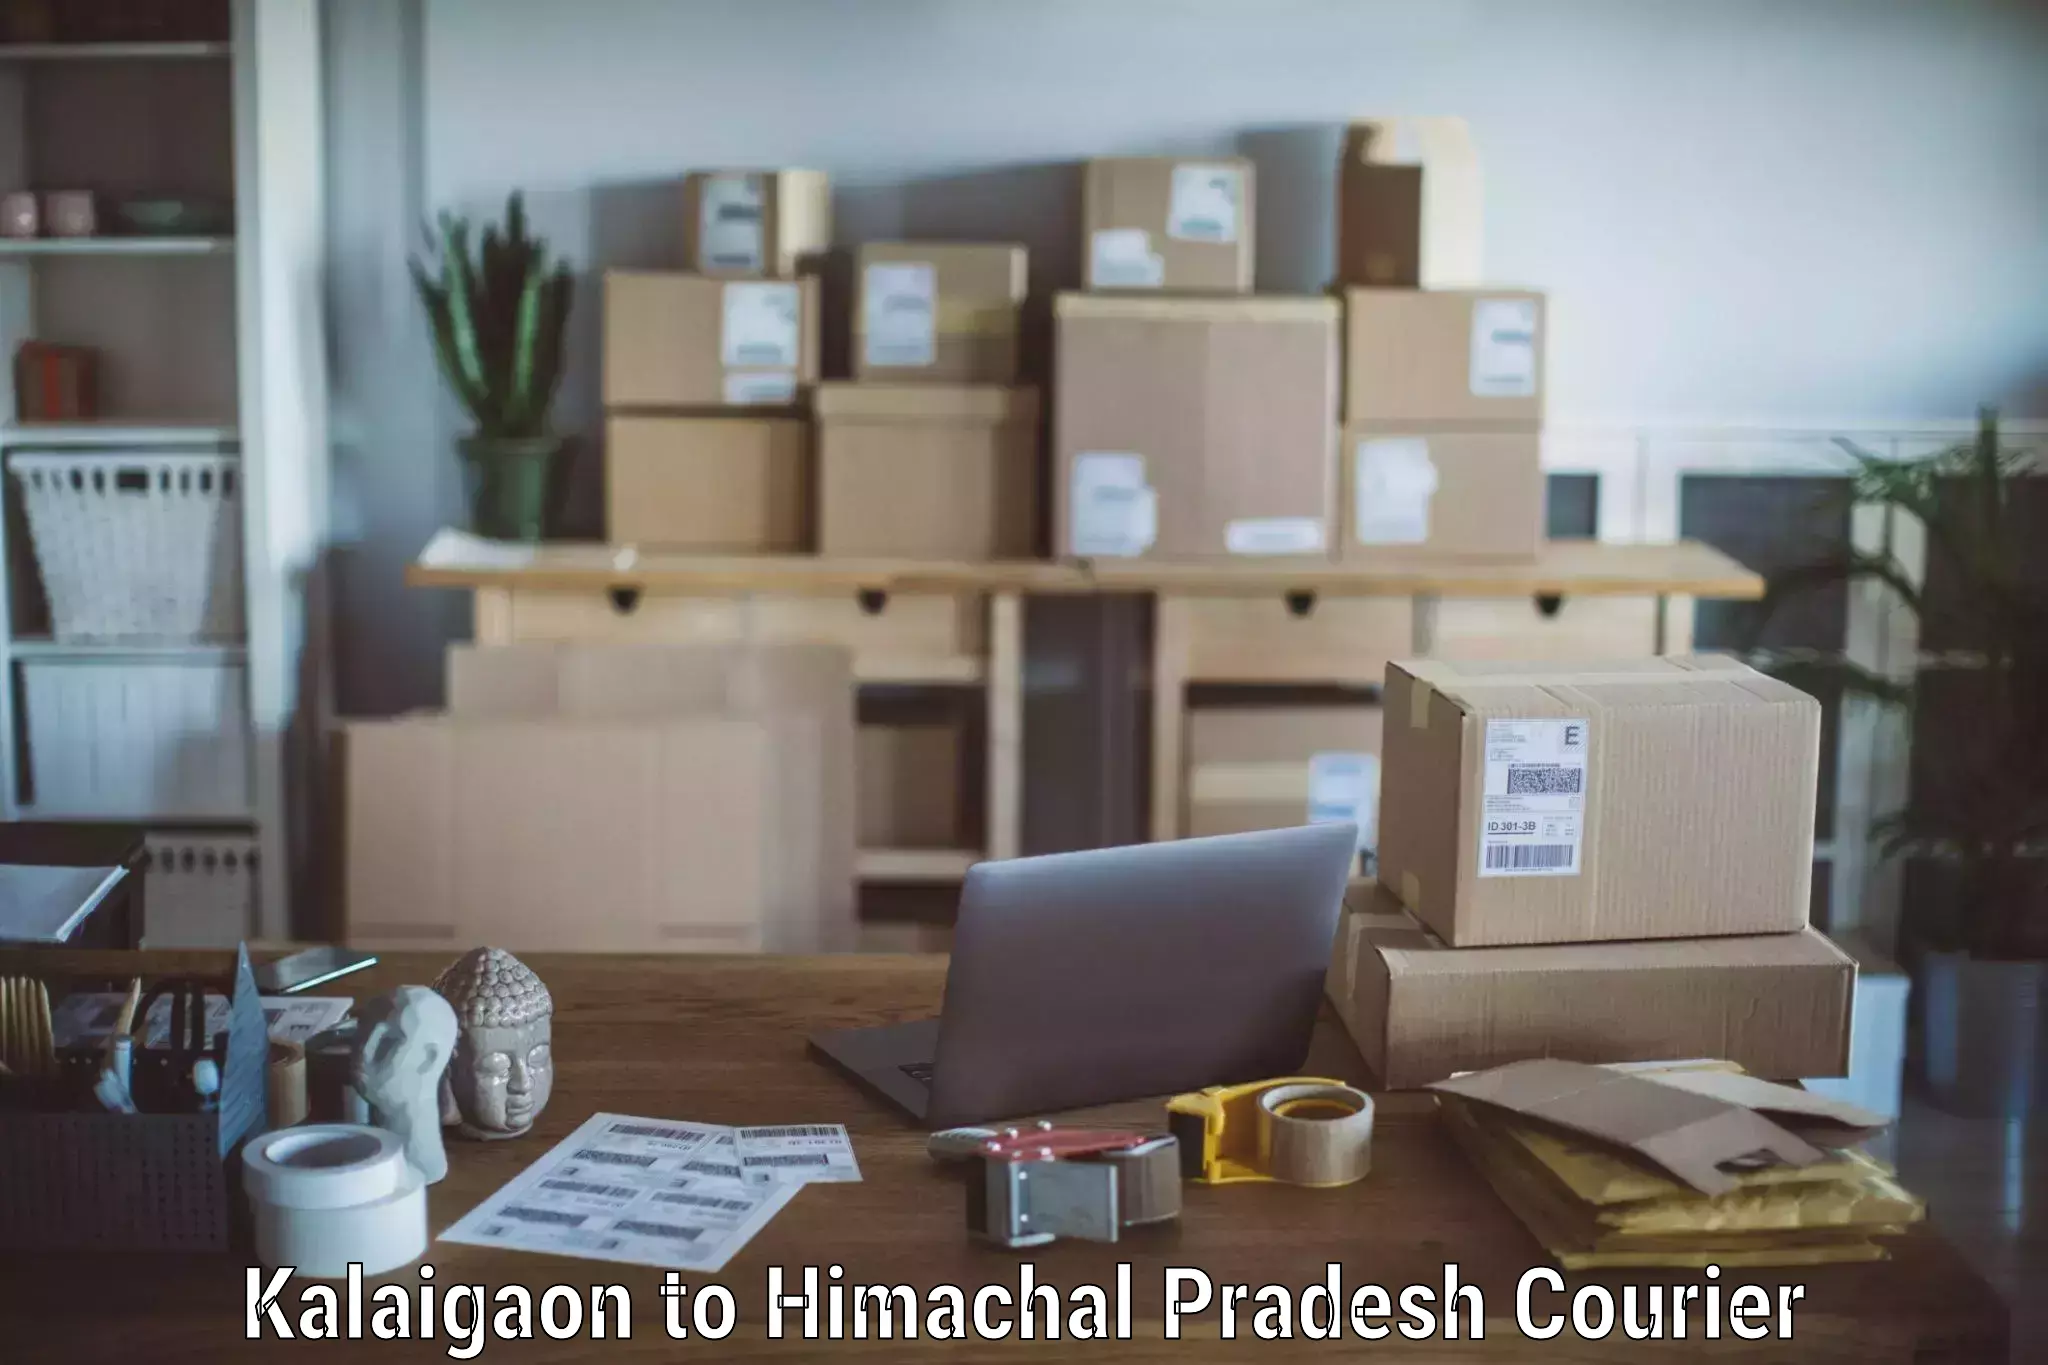 Professional moving company Kalaigaon to Himachal Pradesh